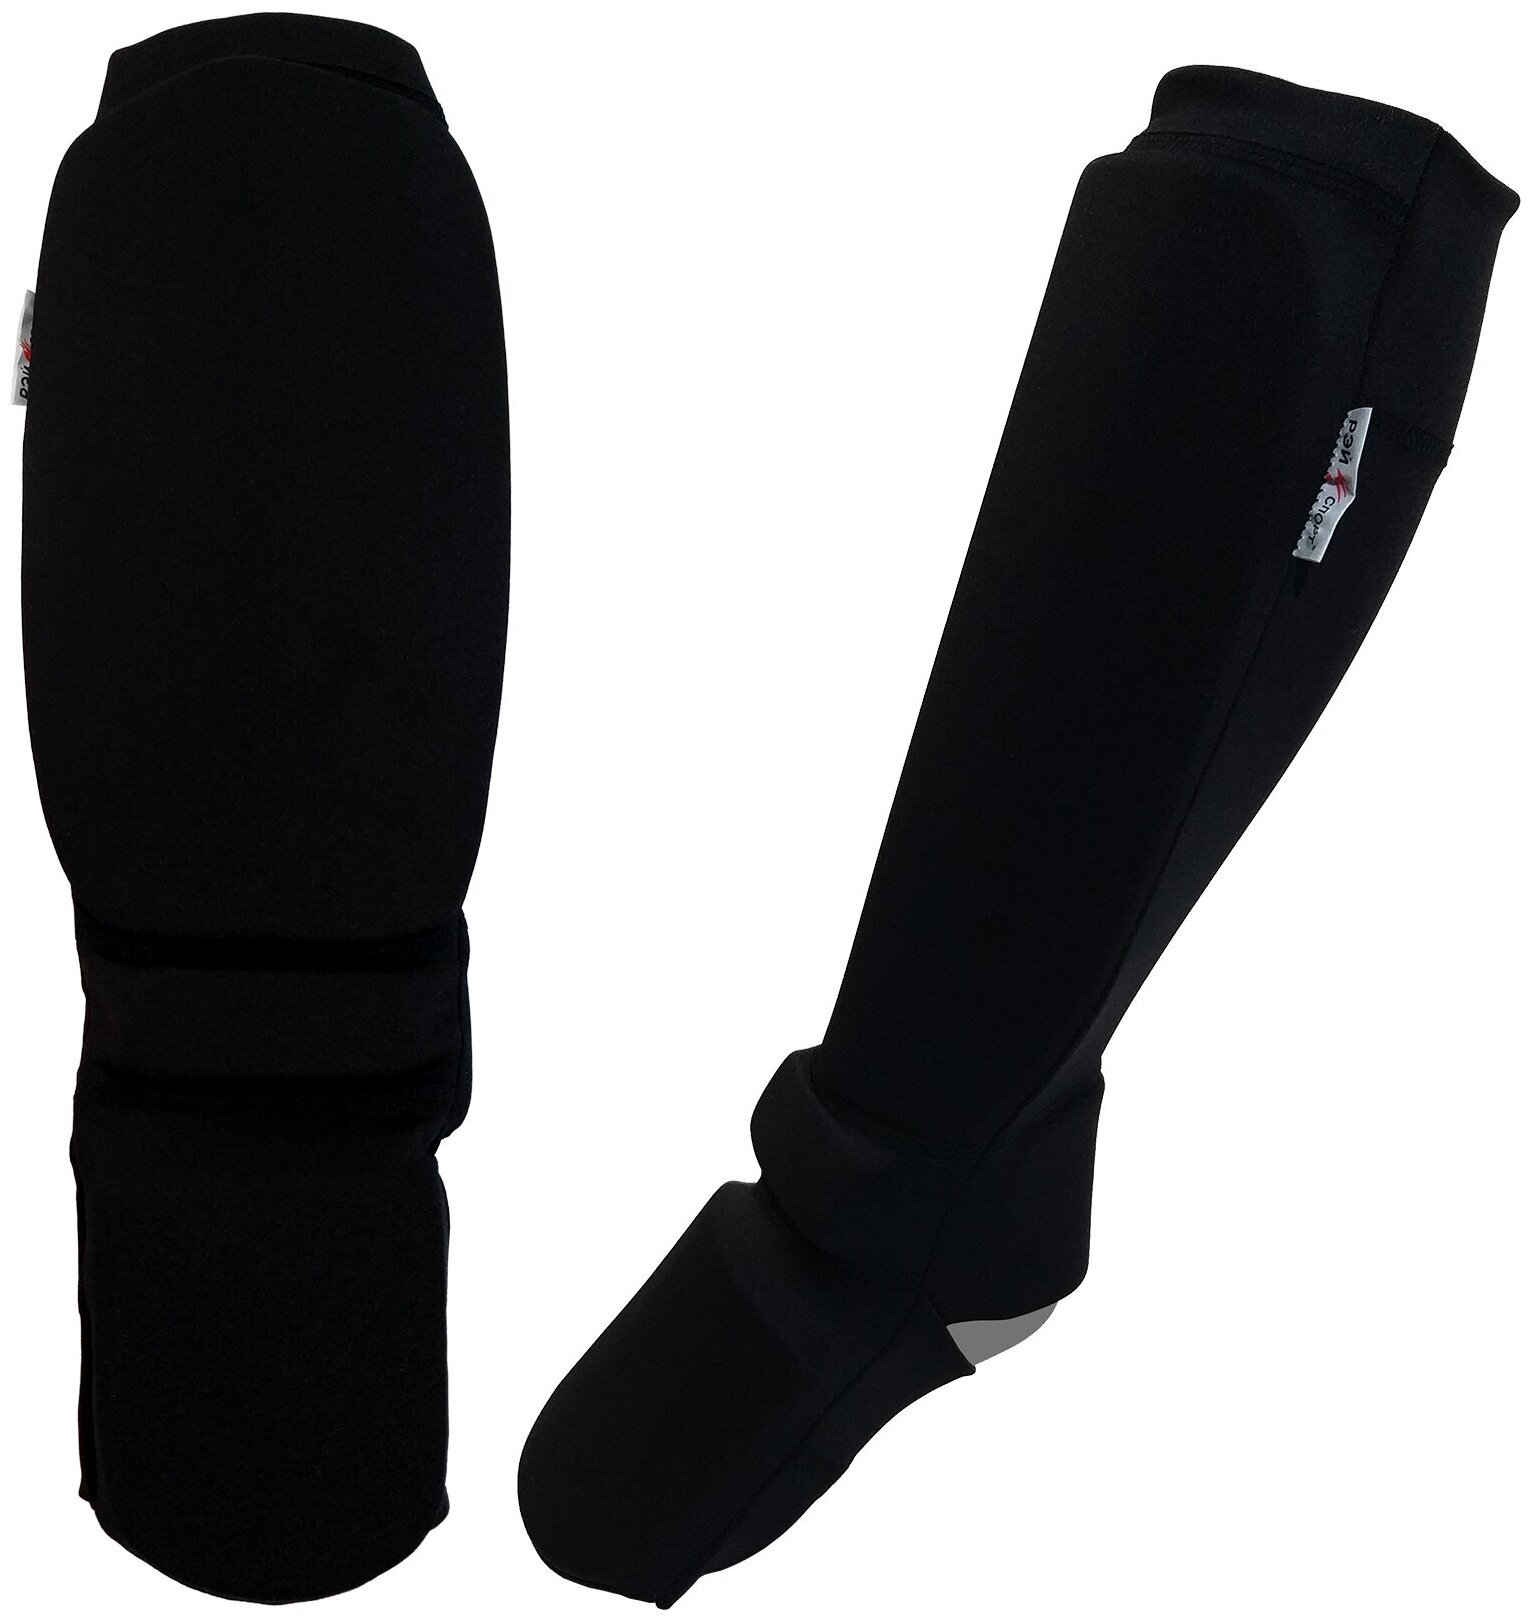 Щитки рэй-спорт на голень и подъём с защитой ахиллова сухожилия, размер S, цвет черный